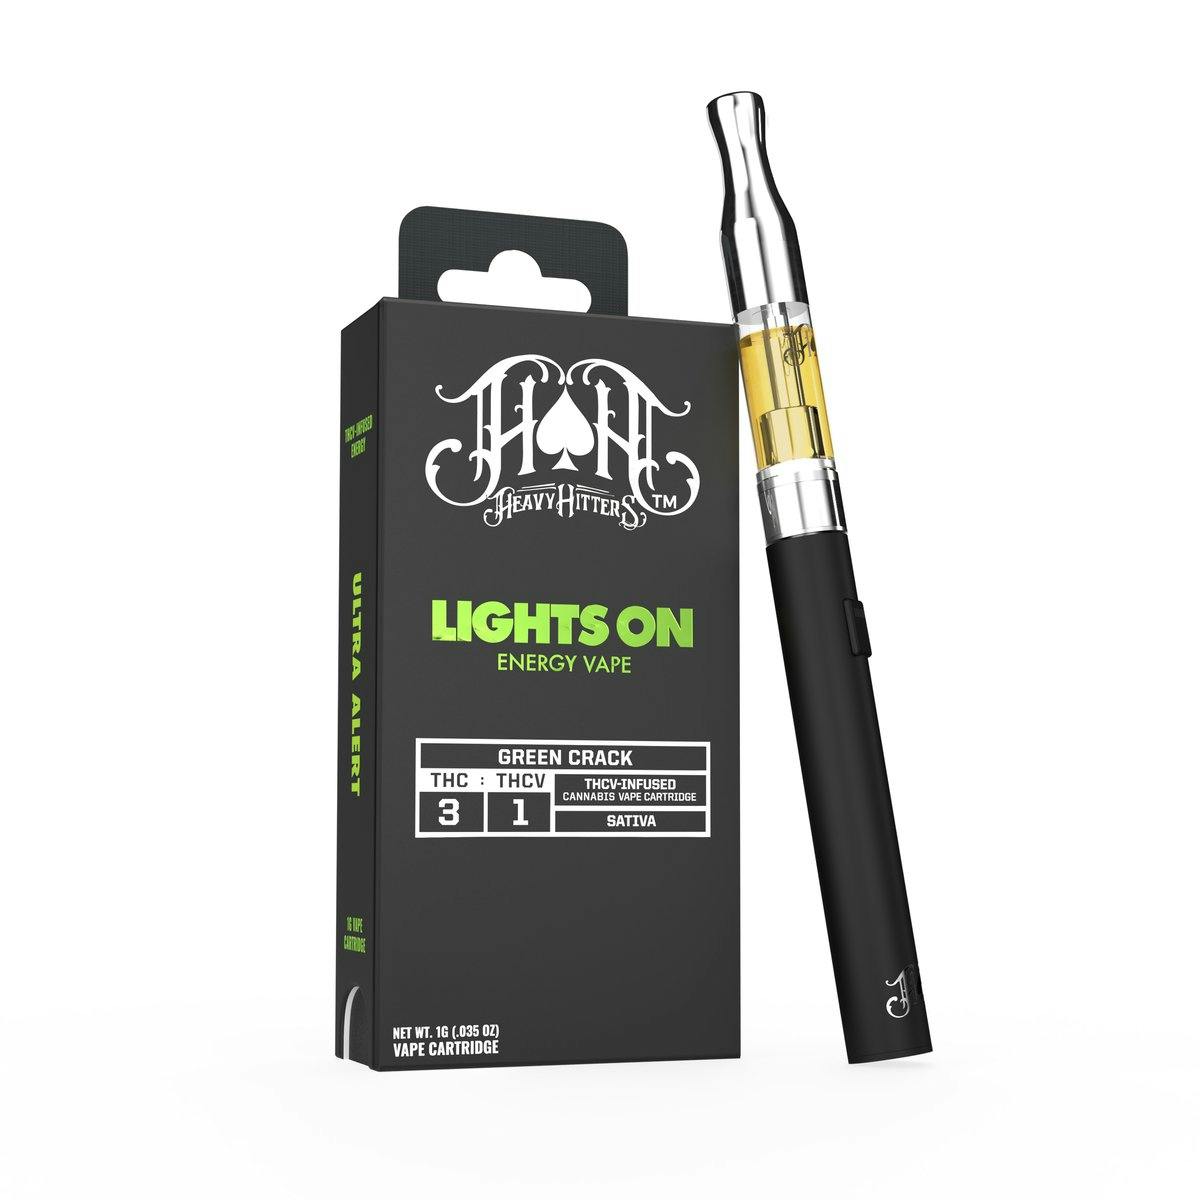 Green Crack Lights On | 1G THCV Energy Vape Cartridge